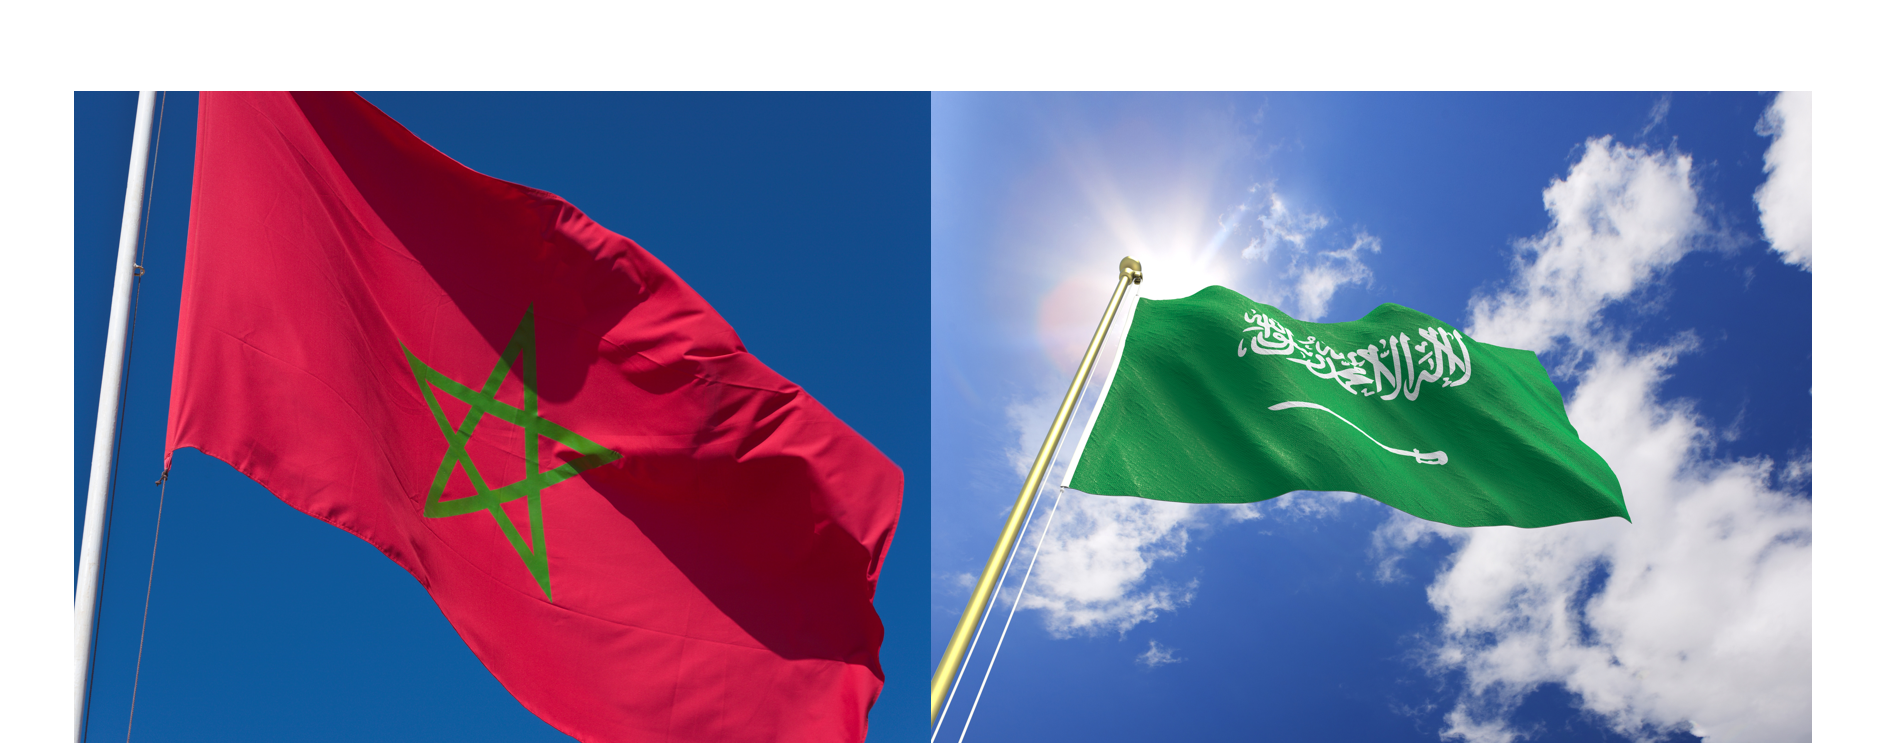 السعودية والمغرب يوقعان اتفاقية للتعاون الأمني ومكافحة الإرهاب